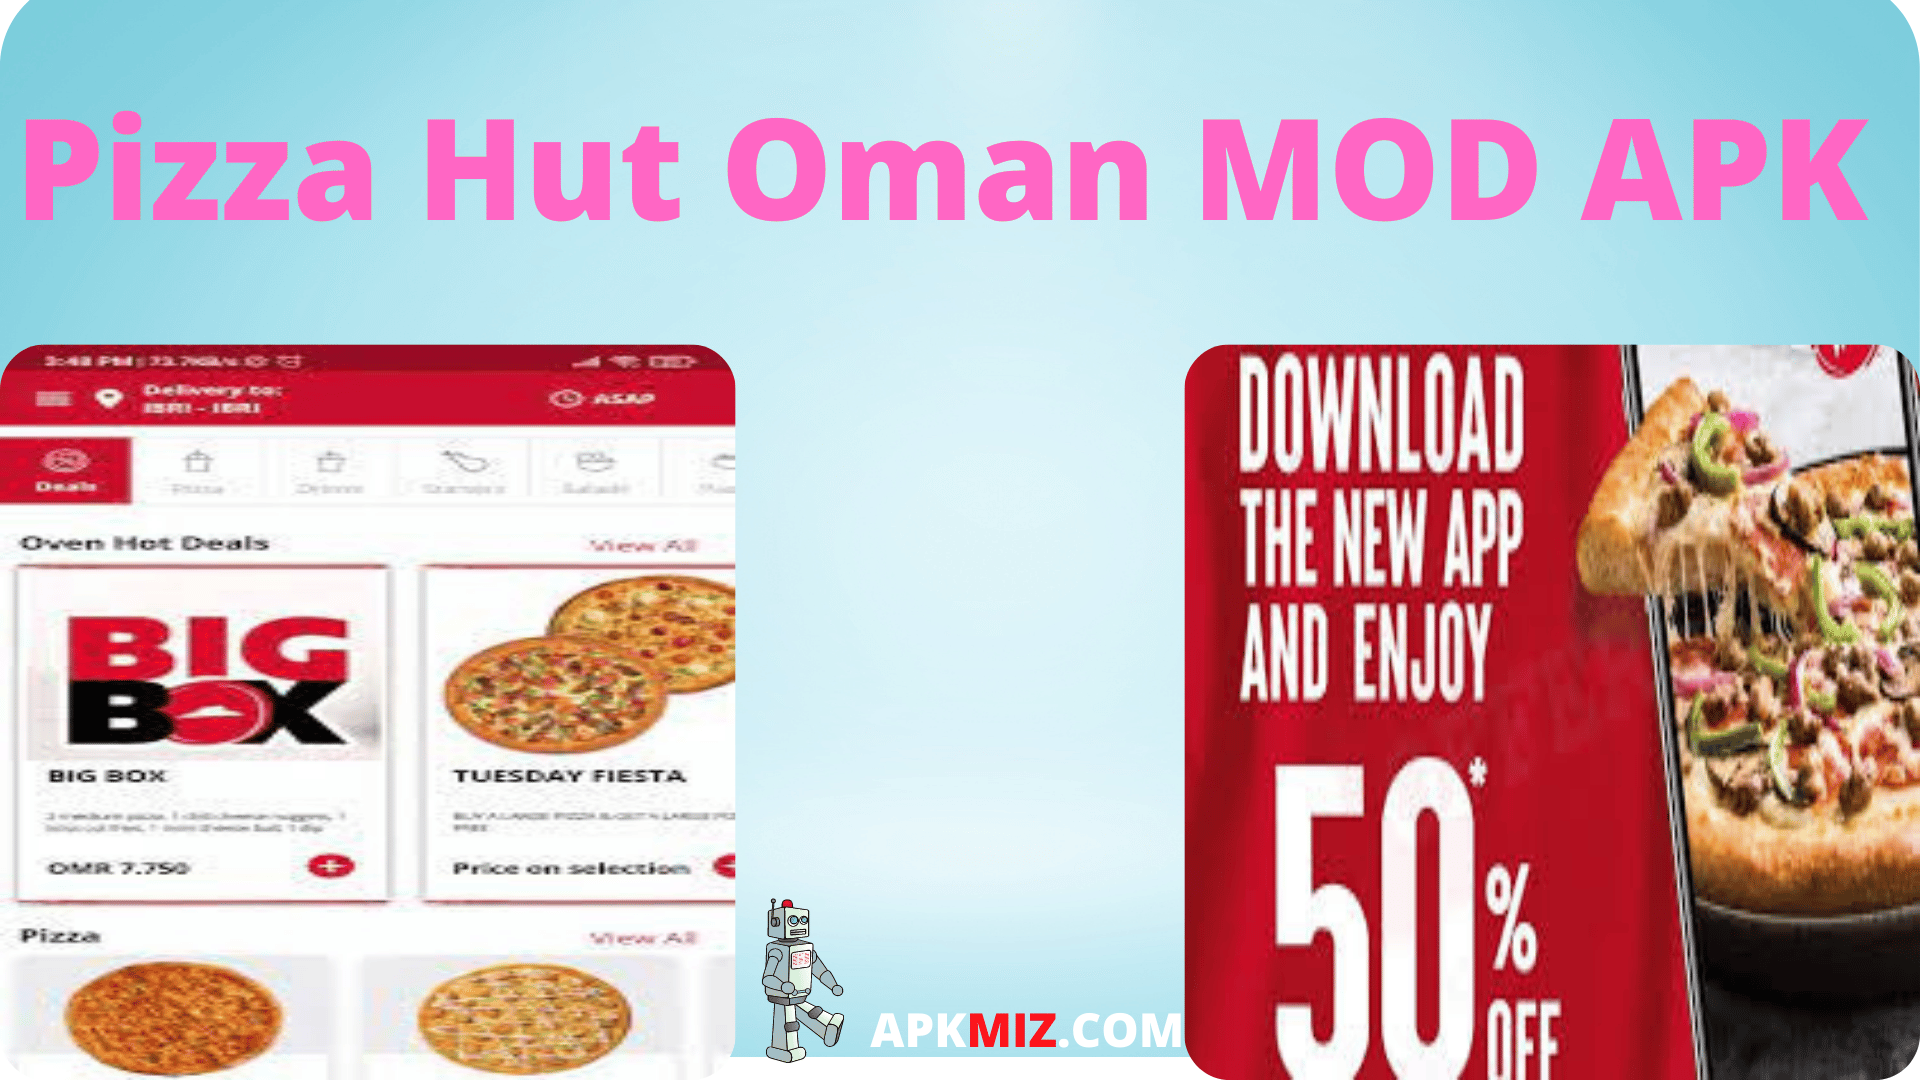 Pizza Hut UAE- Order Food Now‏ Mod Apk